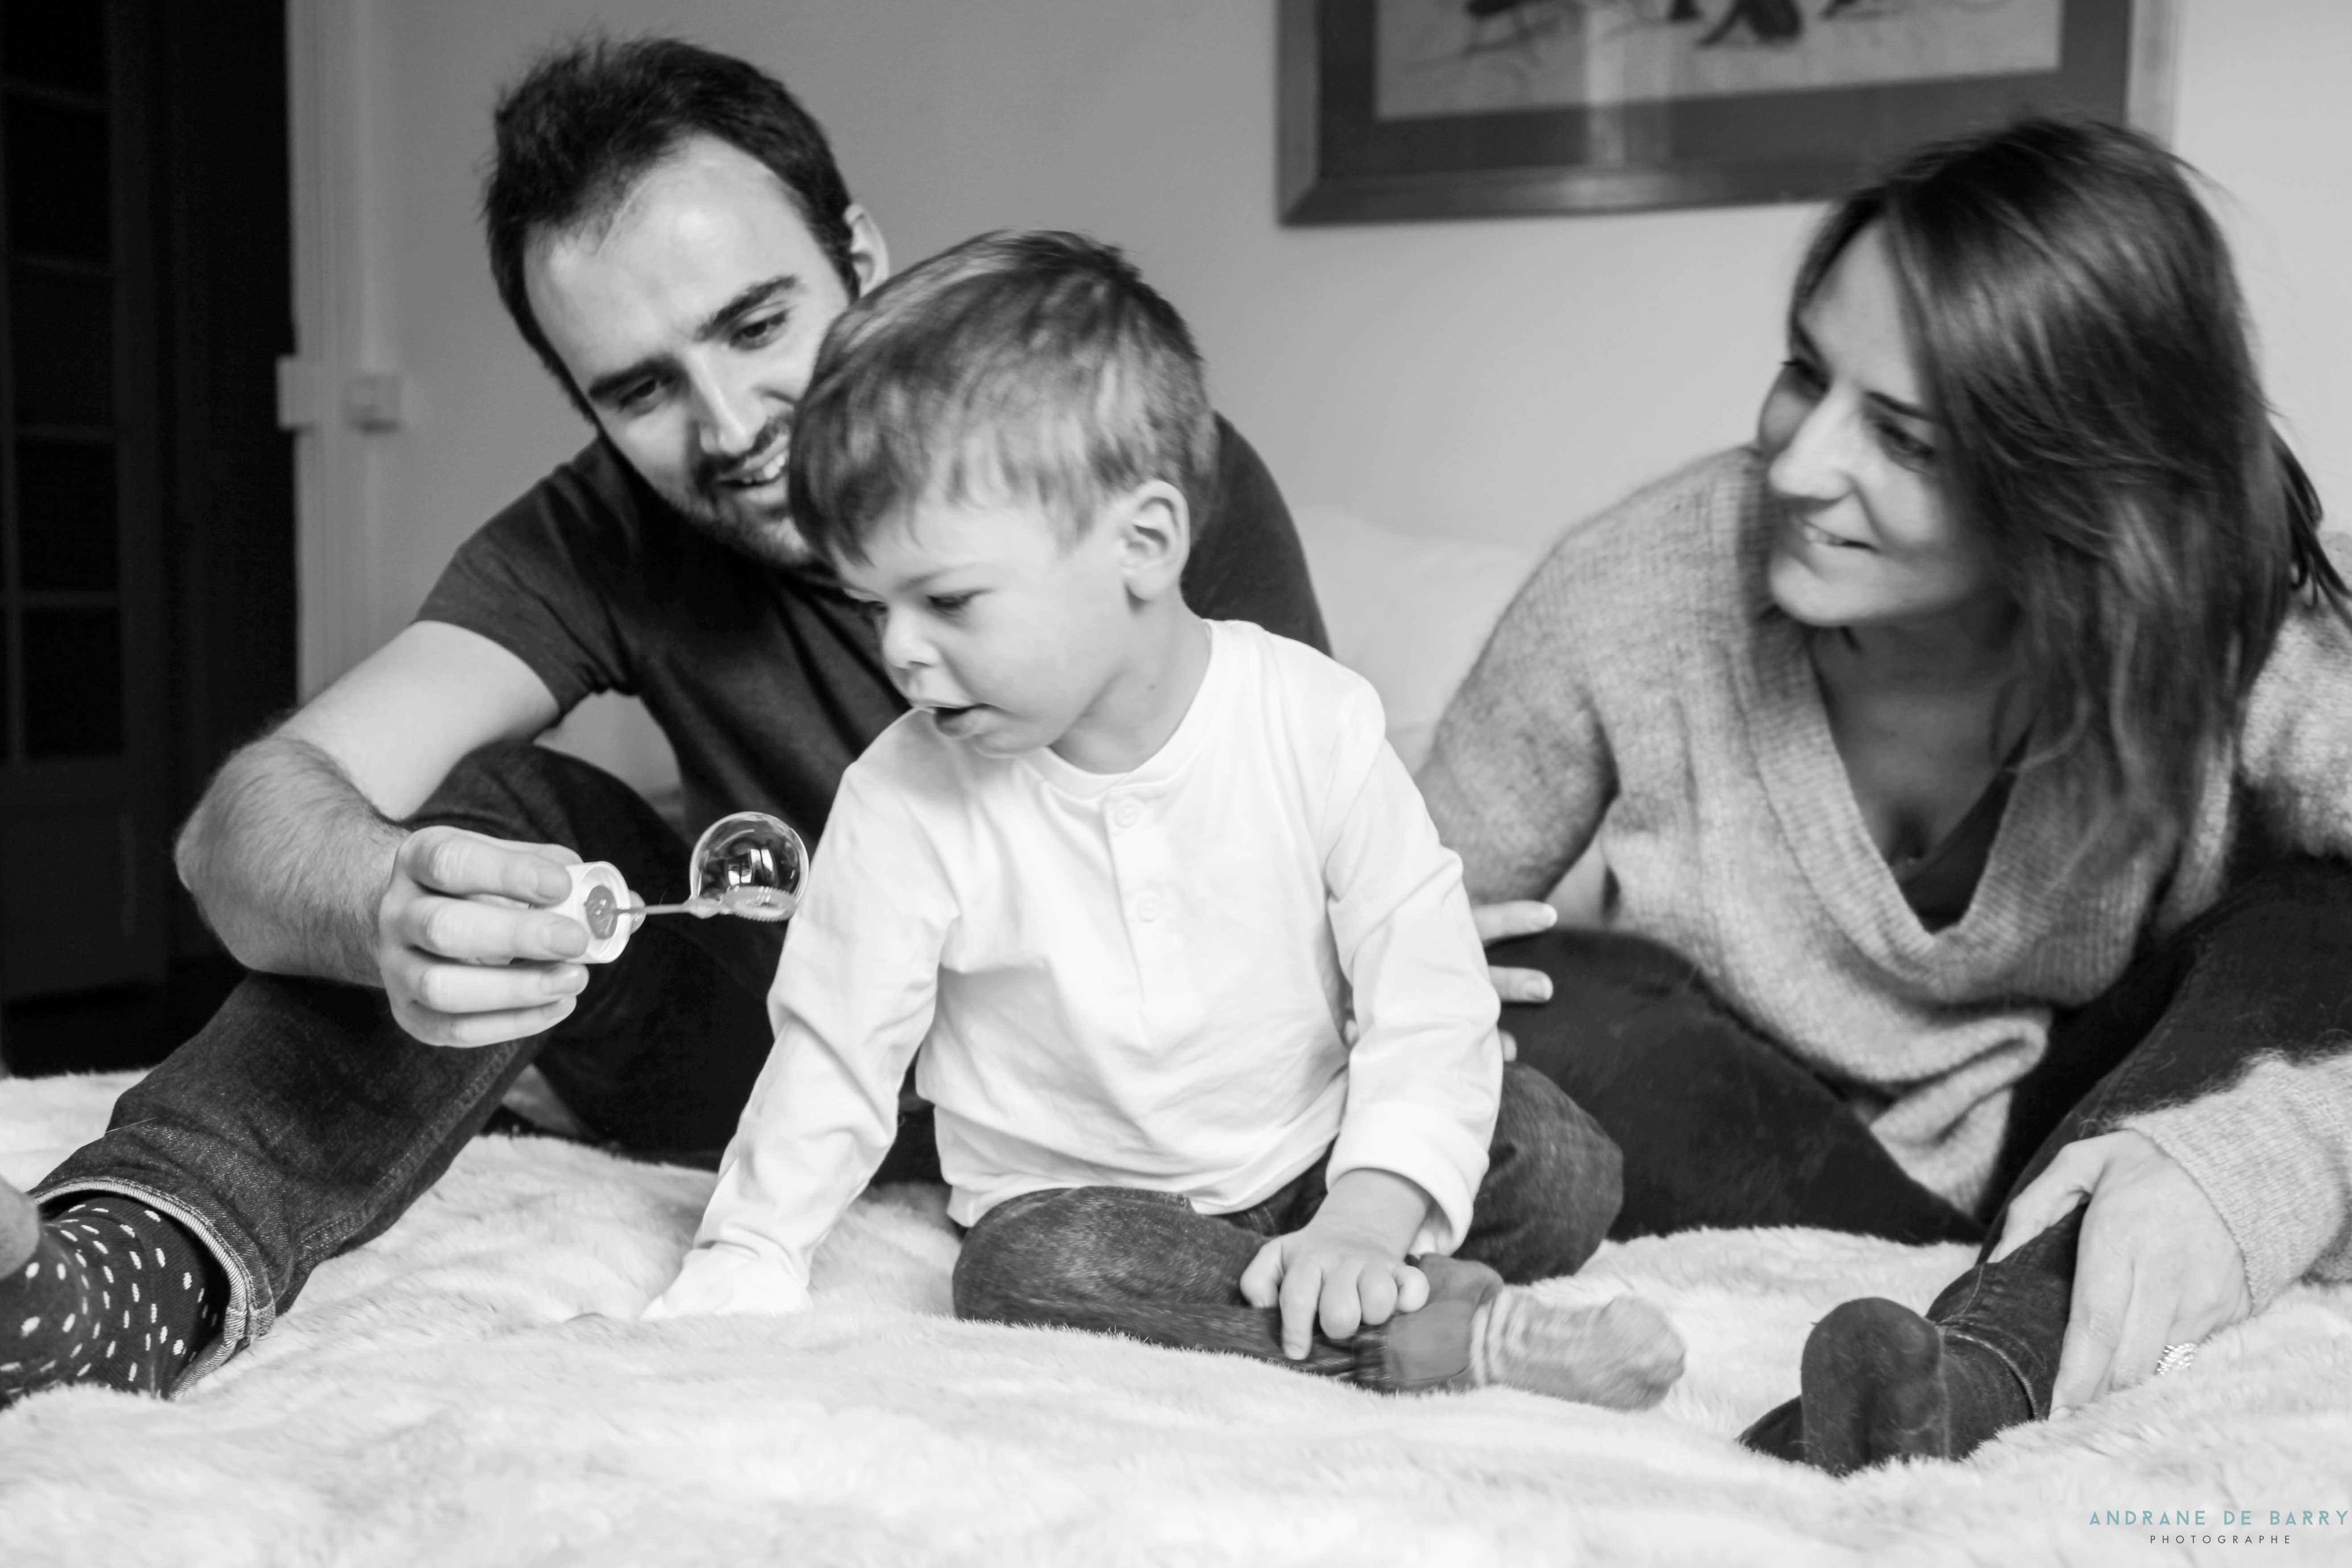 Enfant atteint du syndrome de Williams et Beuren joue aux bulles de savon avec ses parents